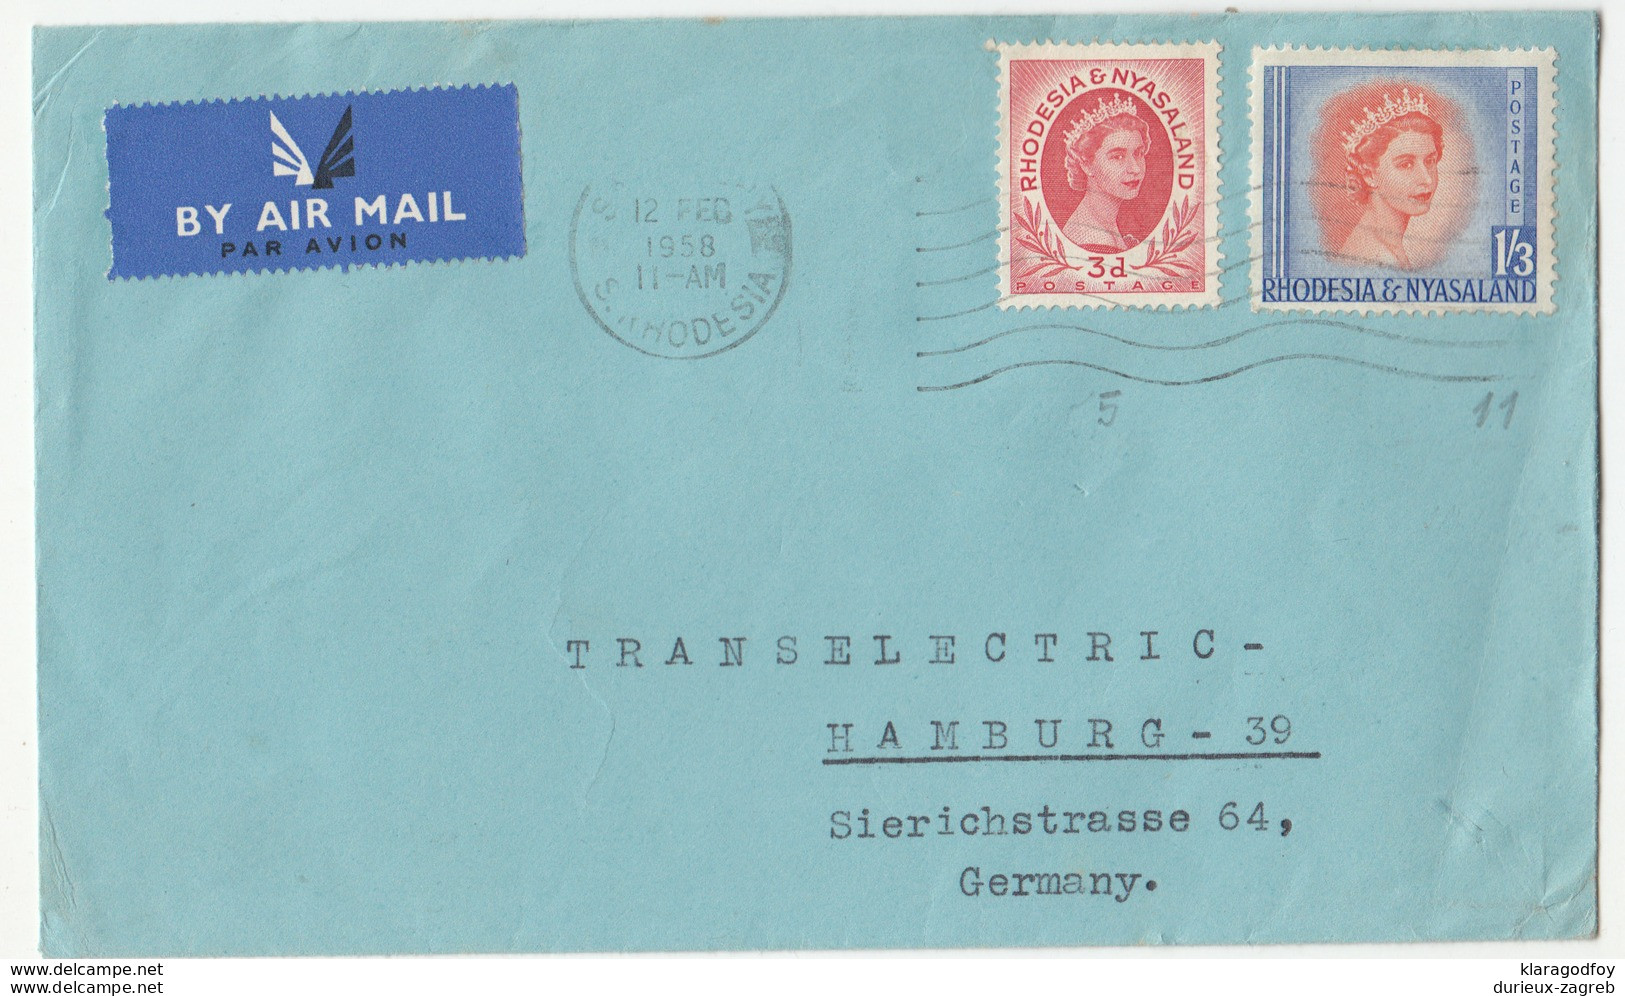 Rhodesia & Nyasaland, Letter Cover Airmail Travelled 1958 B180122 - Rhodésie & Nyasaland (1954-1963)